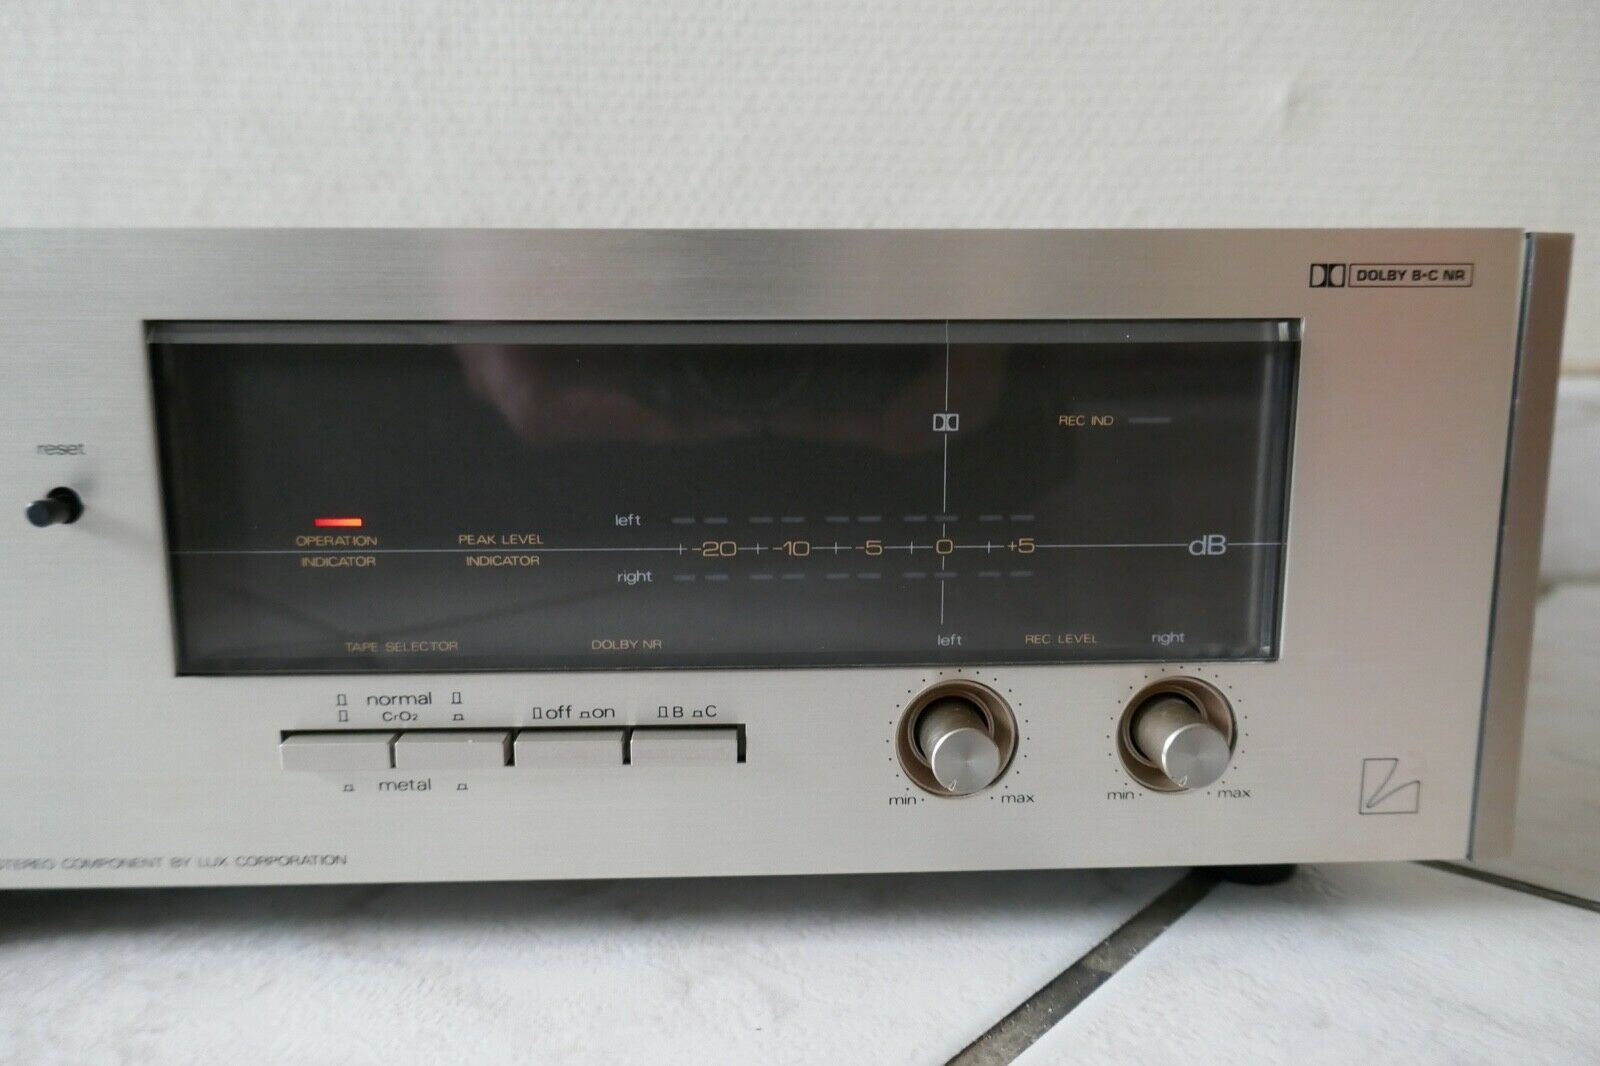 lecteur cassette tape deck luxman K-205 vintage occasion